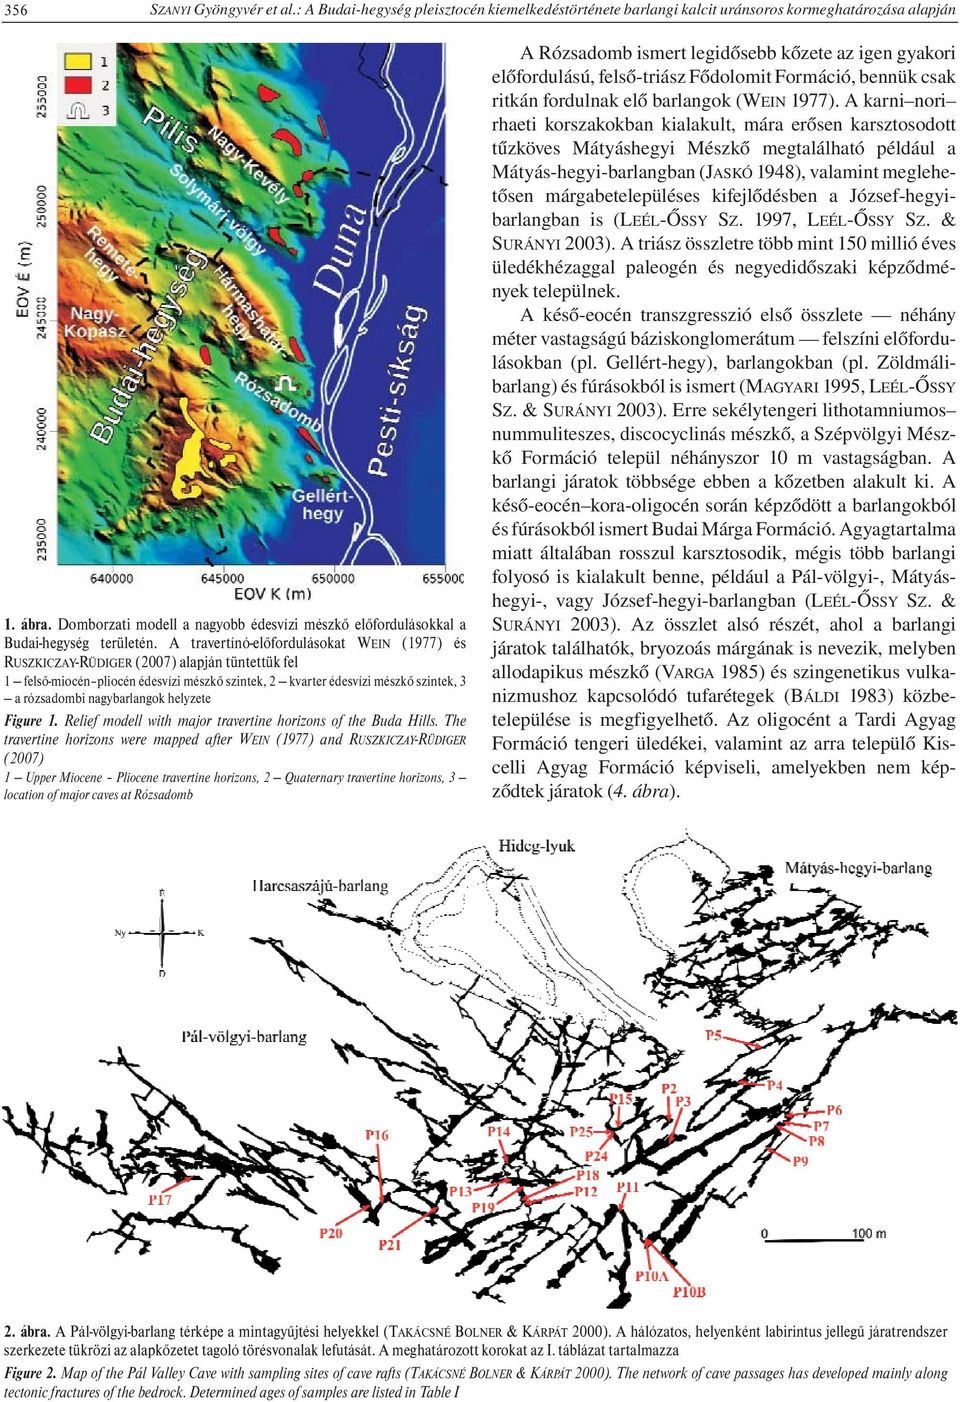 A travertínó-előfordulásokat WEIN (1977) és RUSZKICZAY-RÜDIGER (2007) alapján tüntettük fel 1 felső-miocén pliocén édesvízi mészkő szintek, 2 kvarter édesvízi mészkő szintek, 3 a rózsadombi